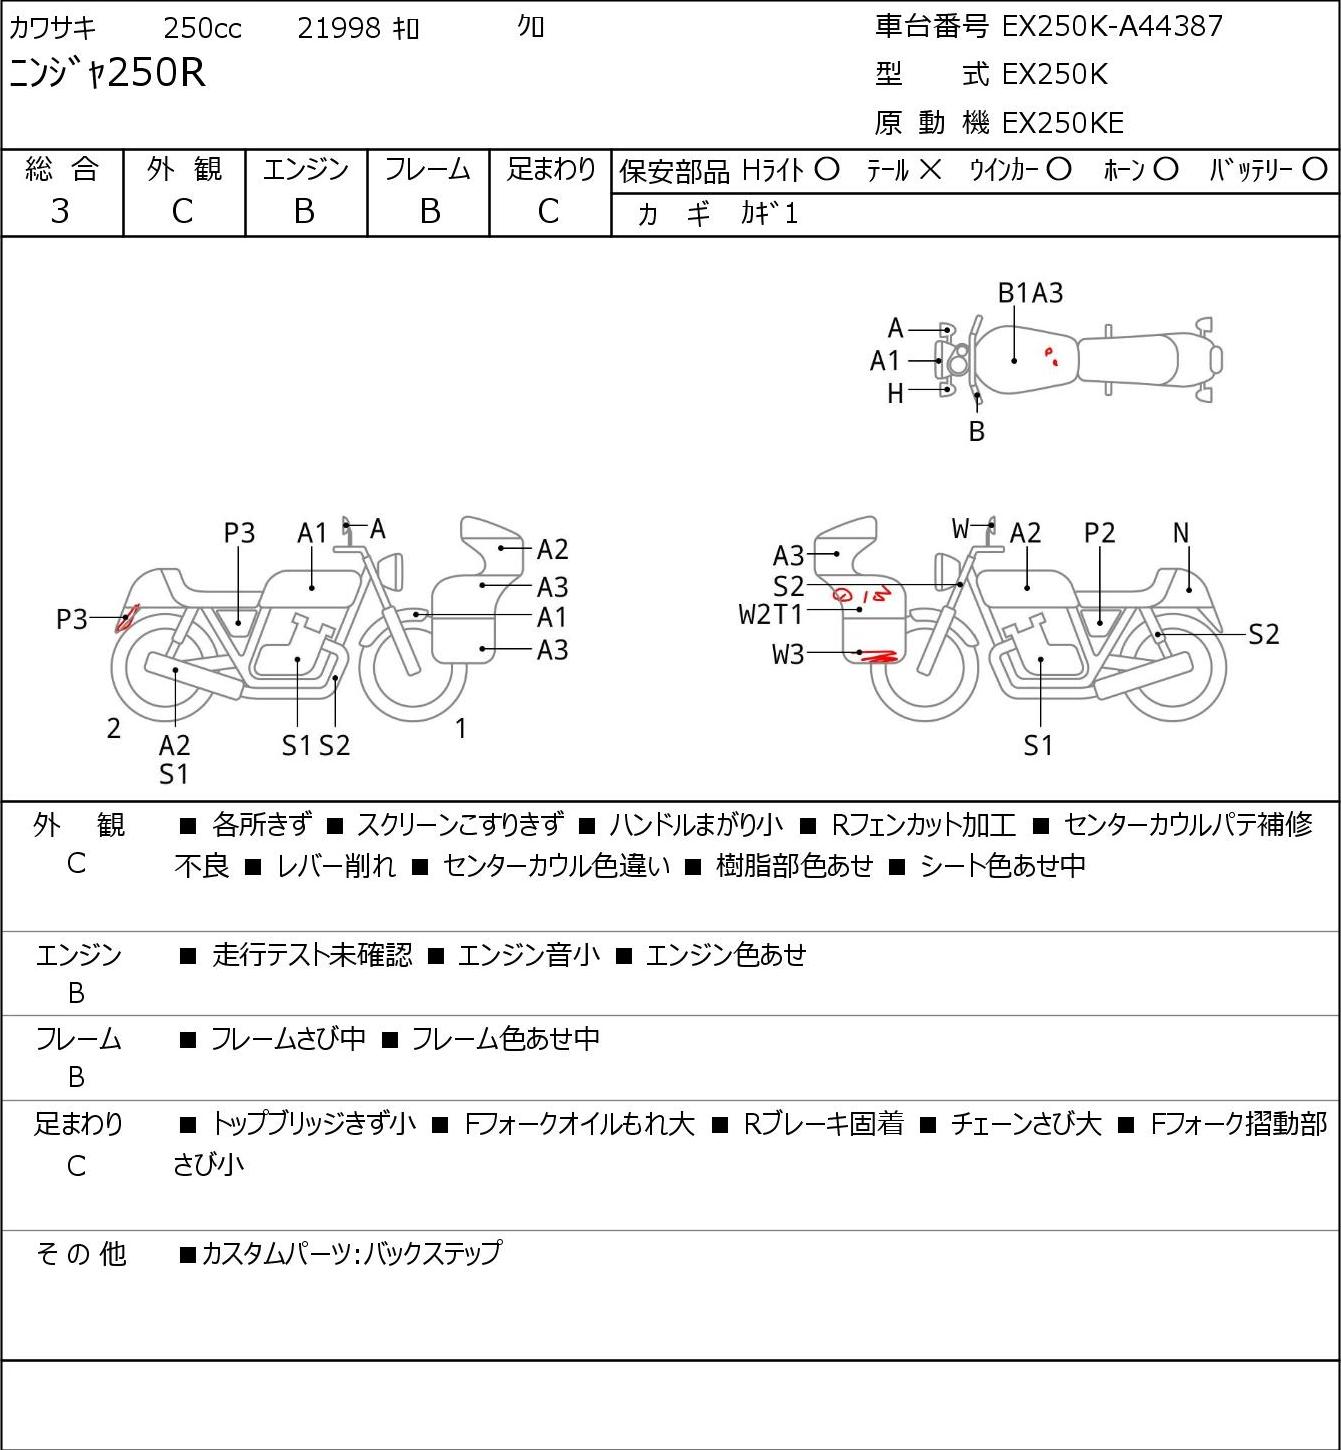 Kawasaki NINJA 250 R EX250K г. 21998